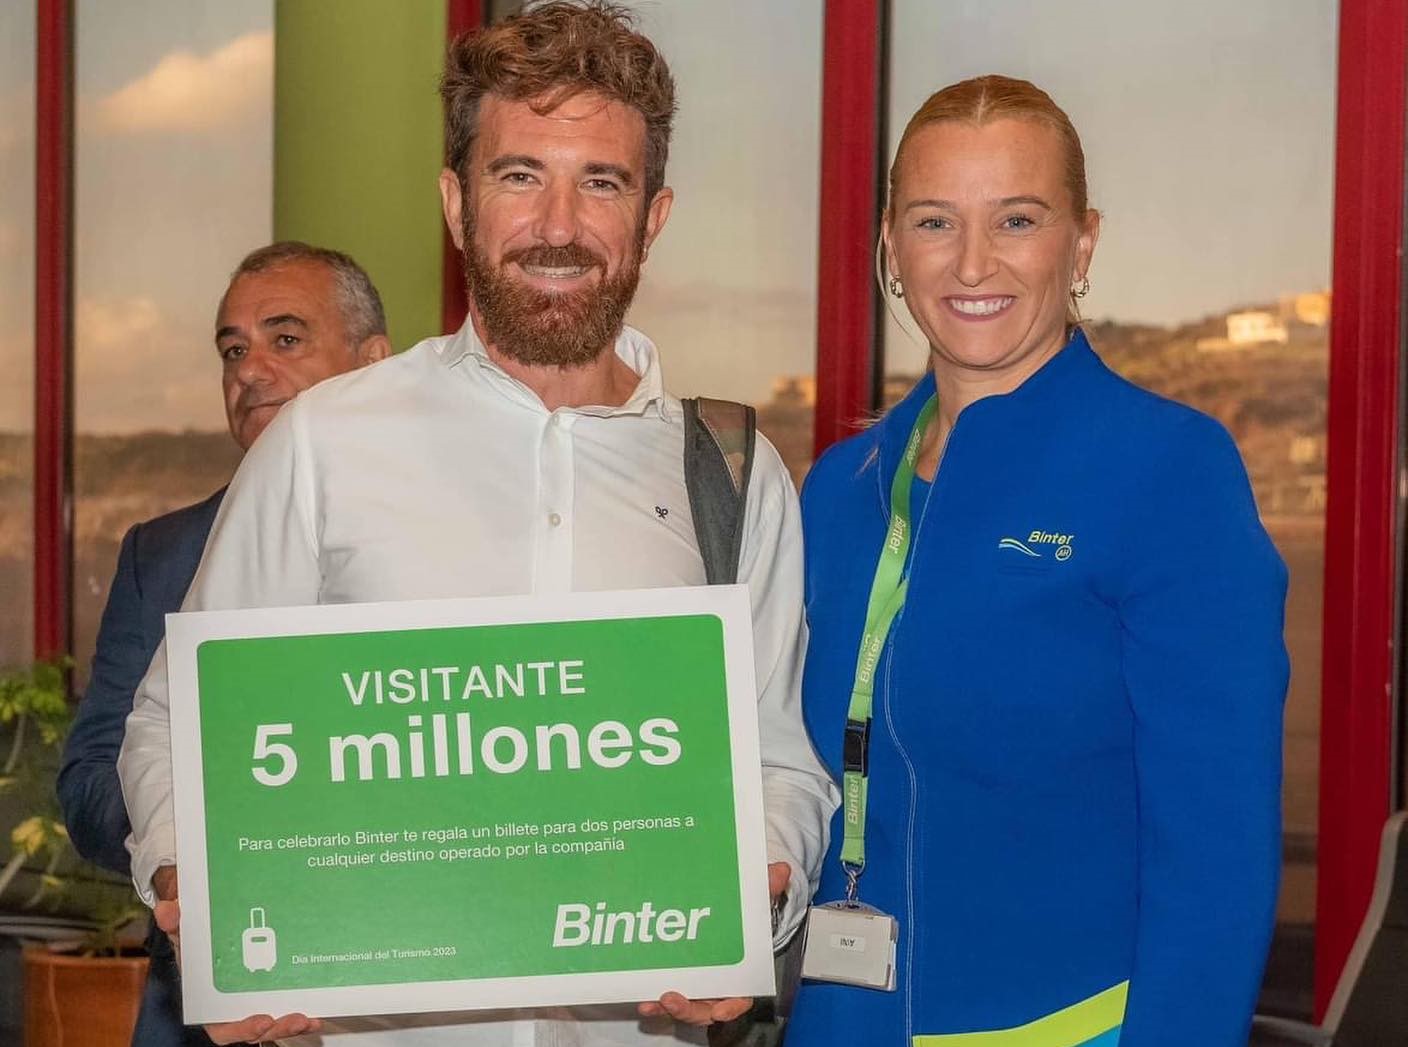 El Hierro recibe al visitante “5 millones” / CanariasNoticias.es 